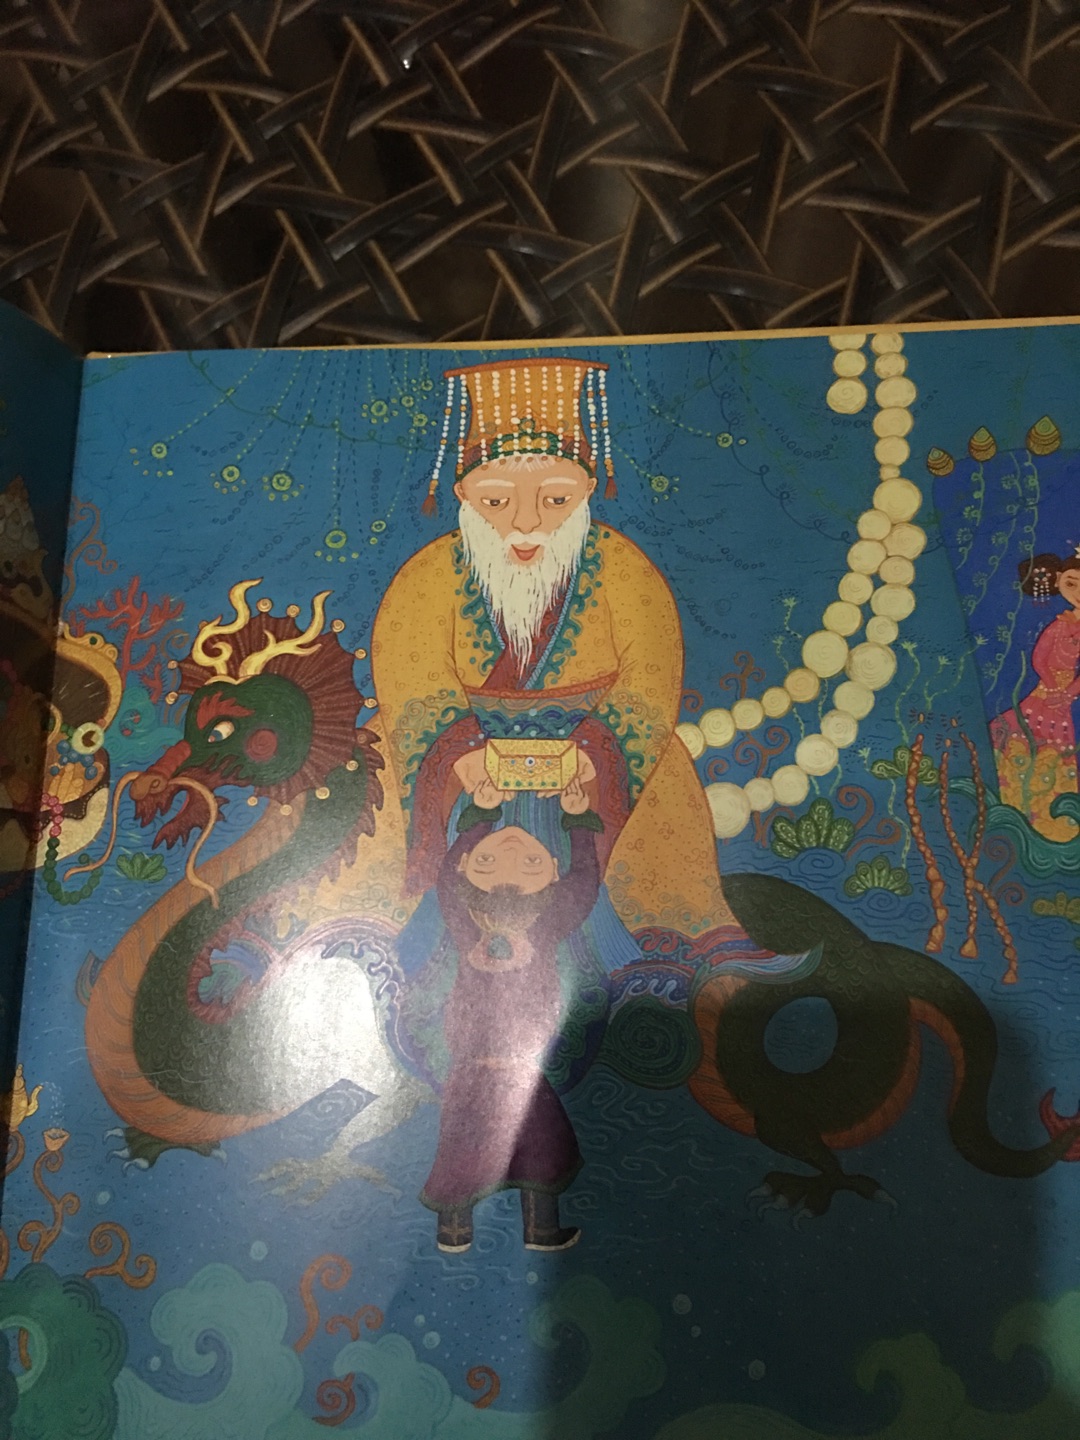 龙王的宝物这个故事带神话色彩，我儿子特别爱听，图书价格太优惠了，物流也特别快